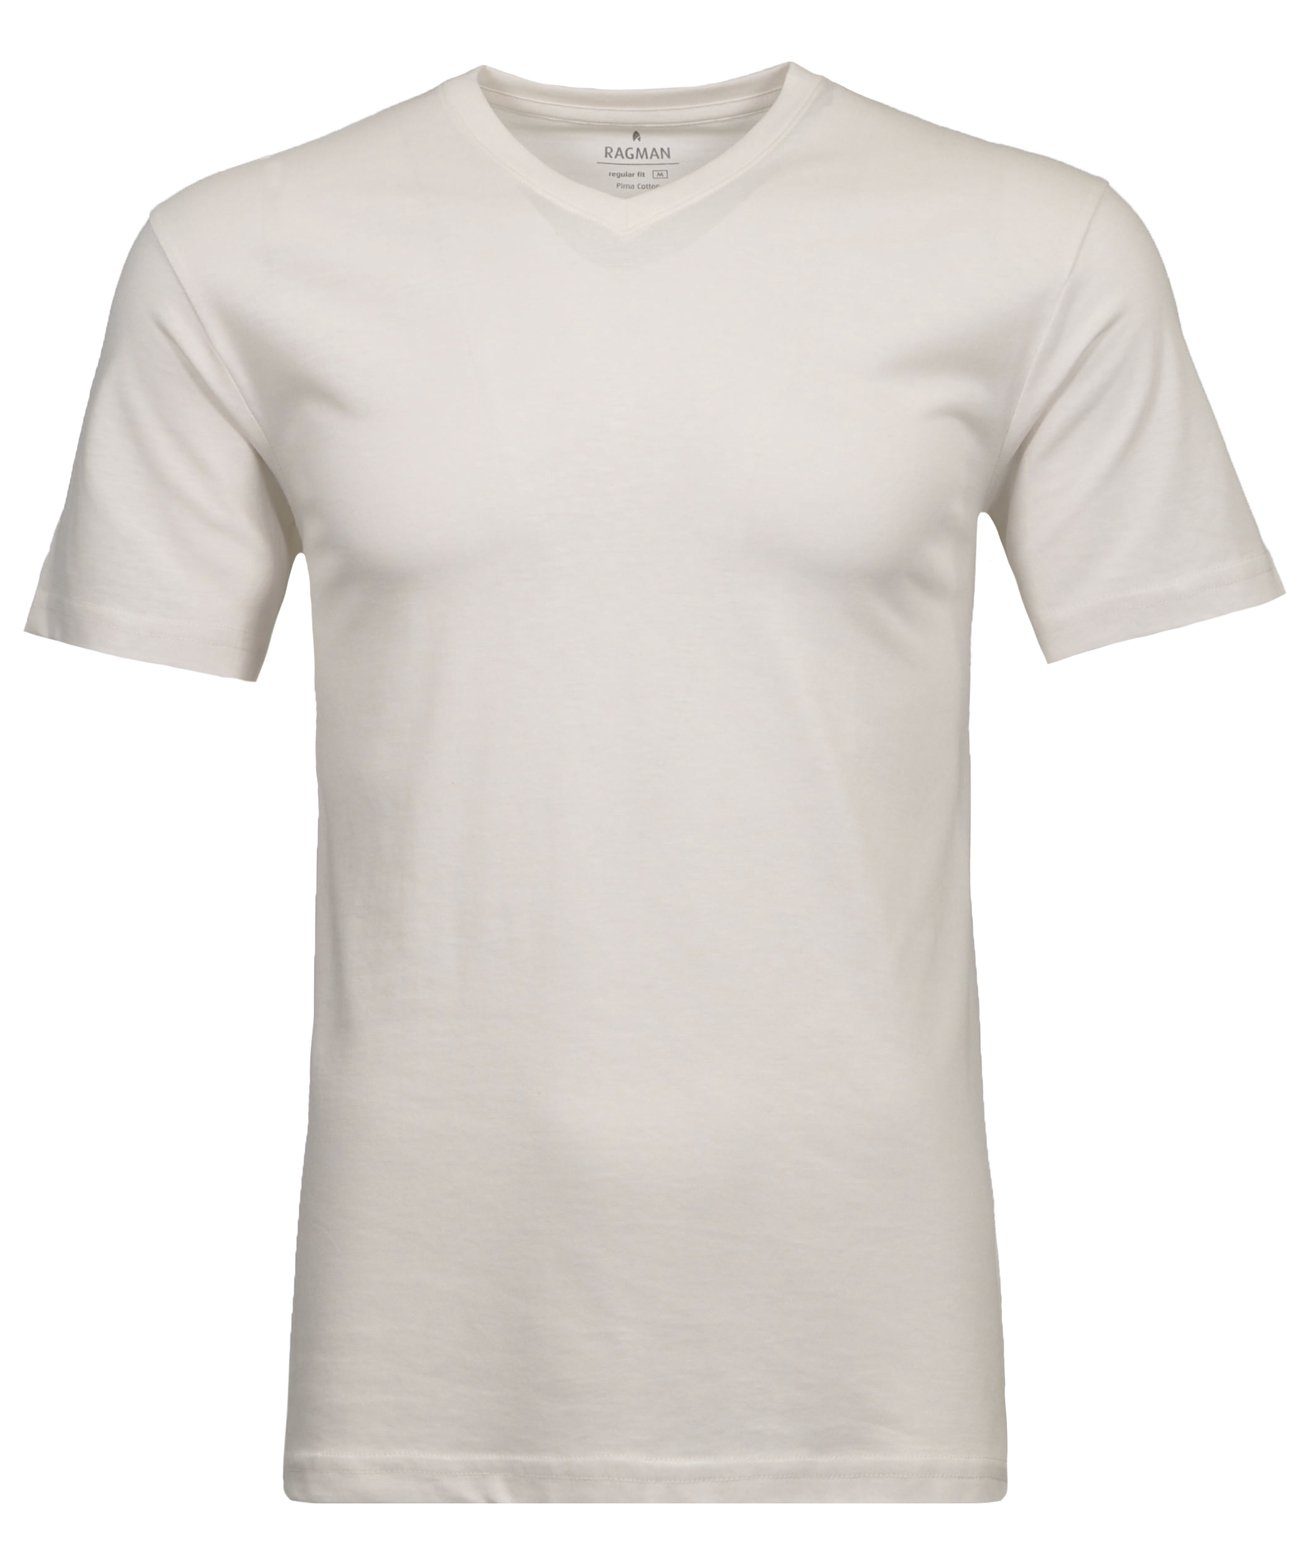 RAGMAN T-Shirt Ecru-008